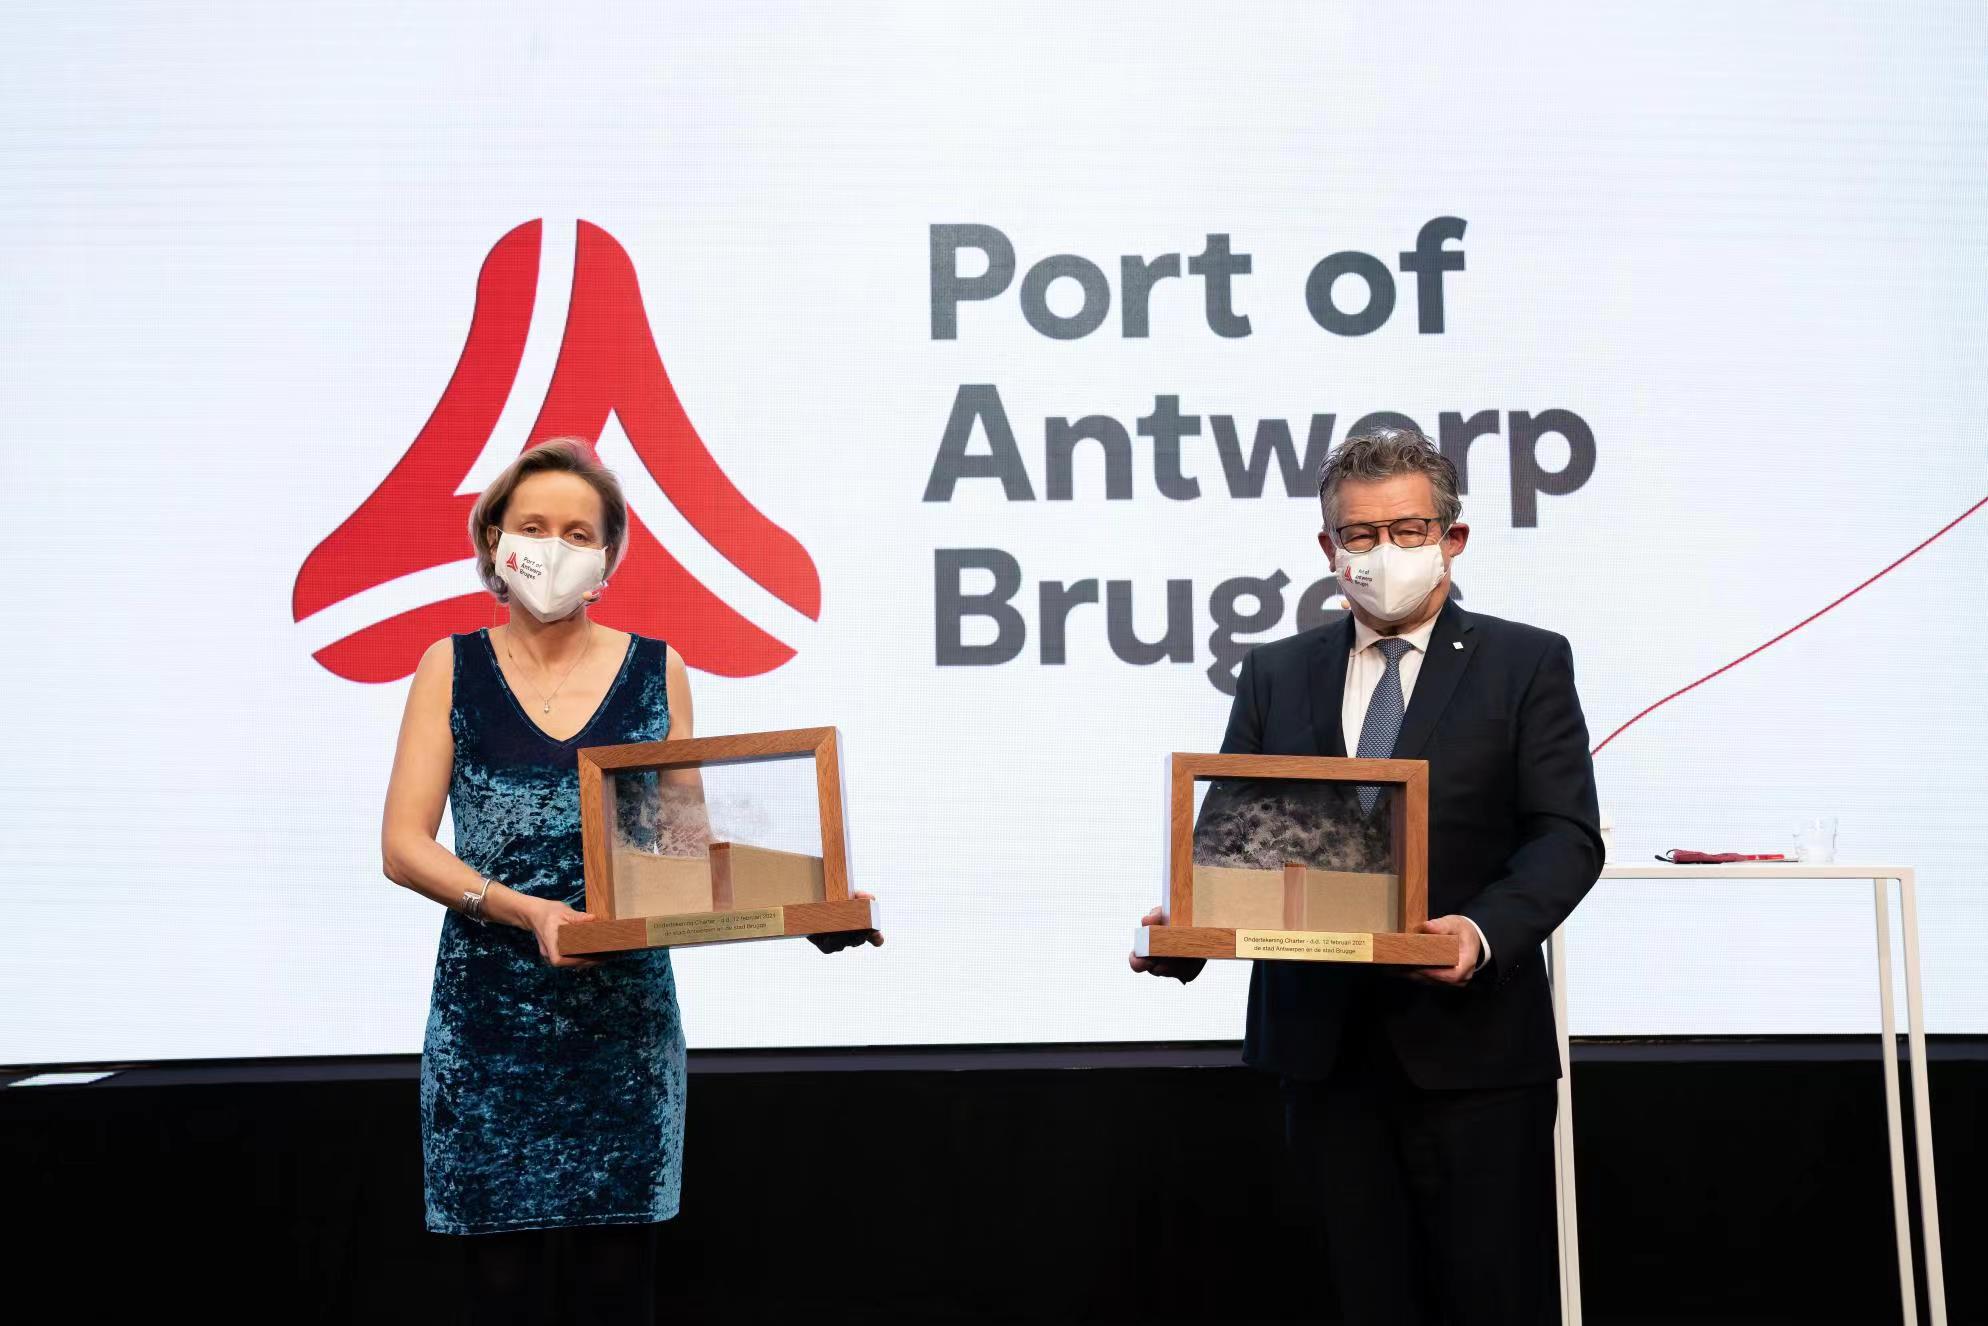  欧洲最大出口港  安特卫普-布鲁日港运营